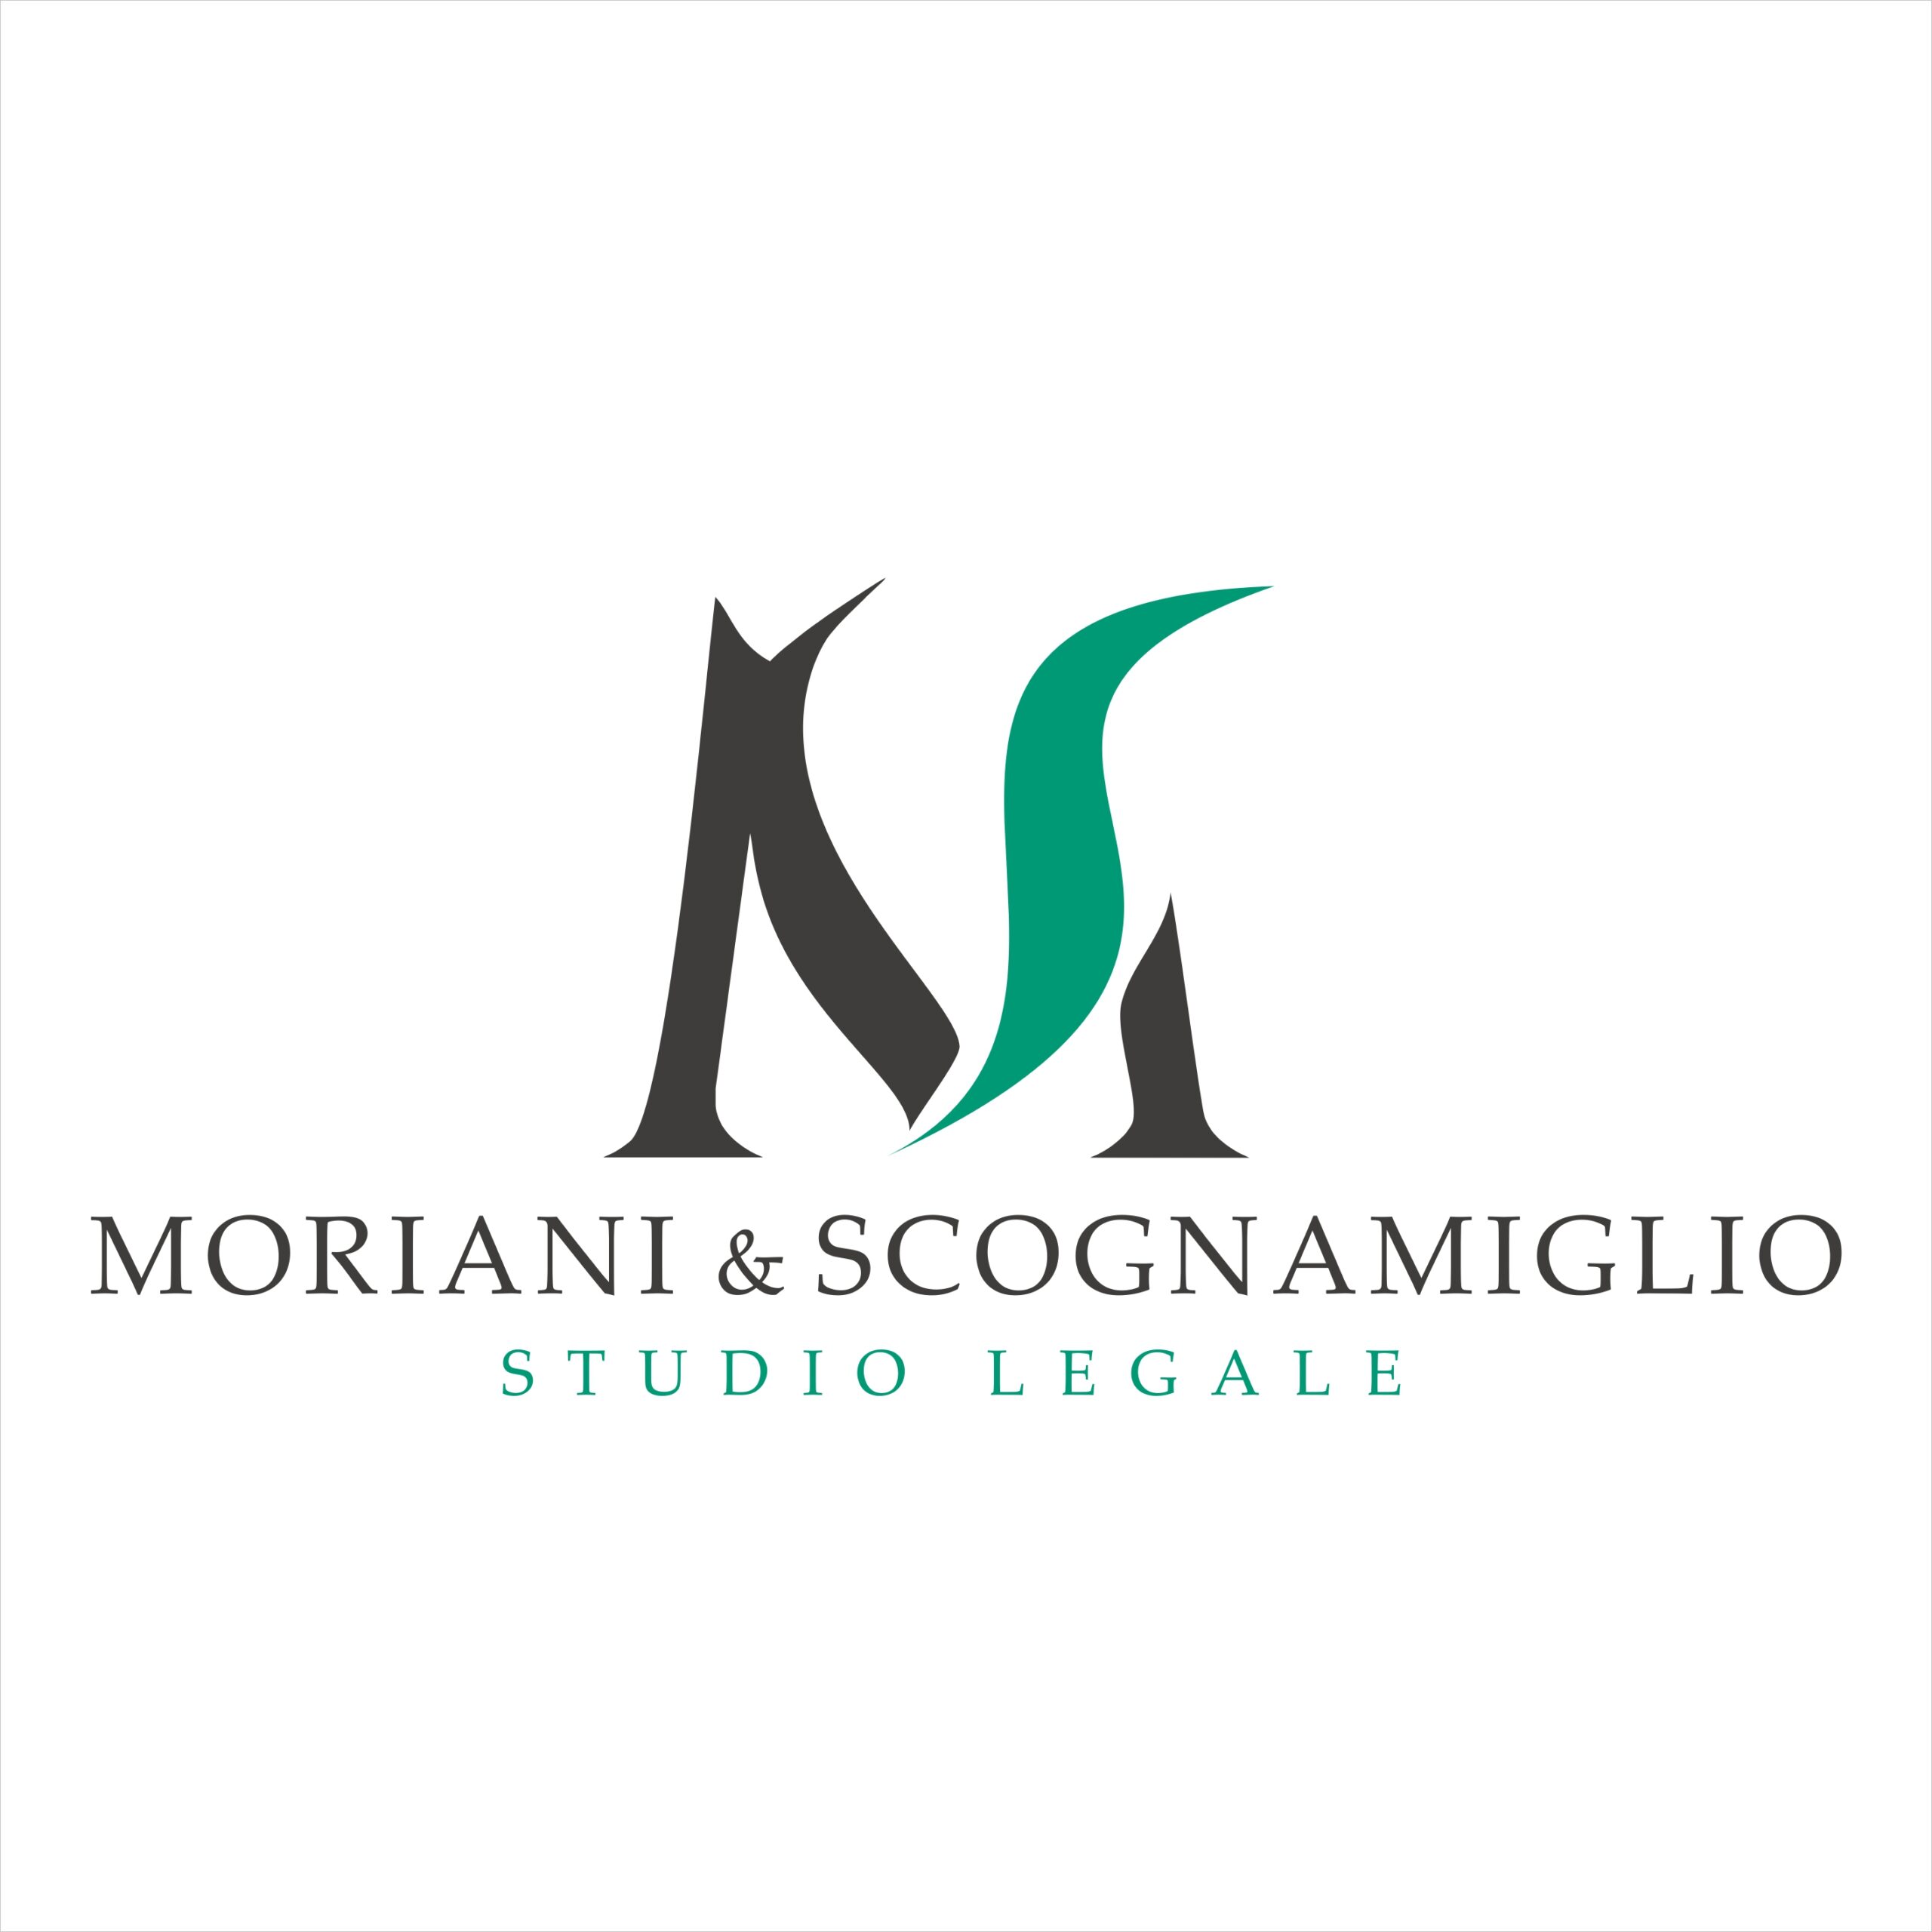 Moriani e Scognamiglio - Elaborazione logo per studio legale